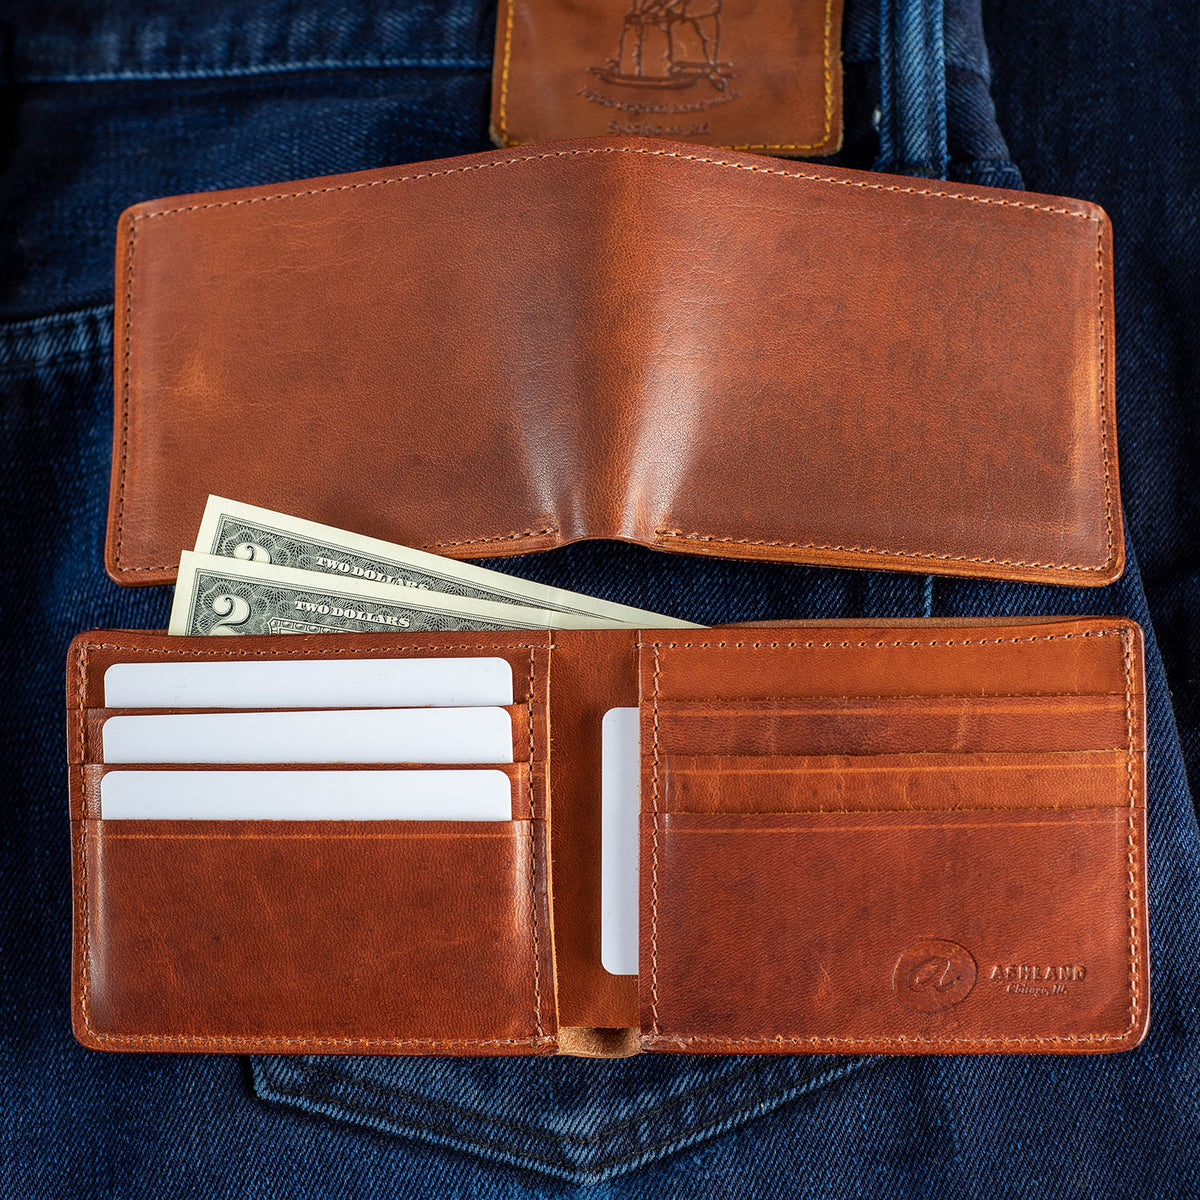 Buy wholesale Large Men's Wallet - Large Classic Men's Wallet